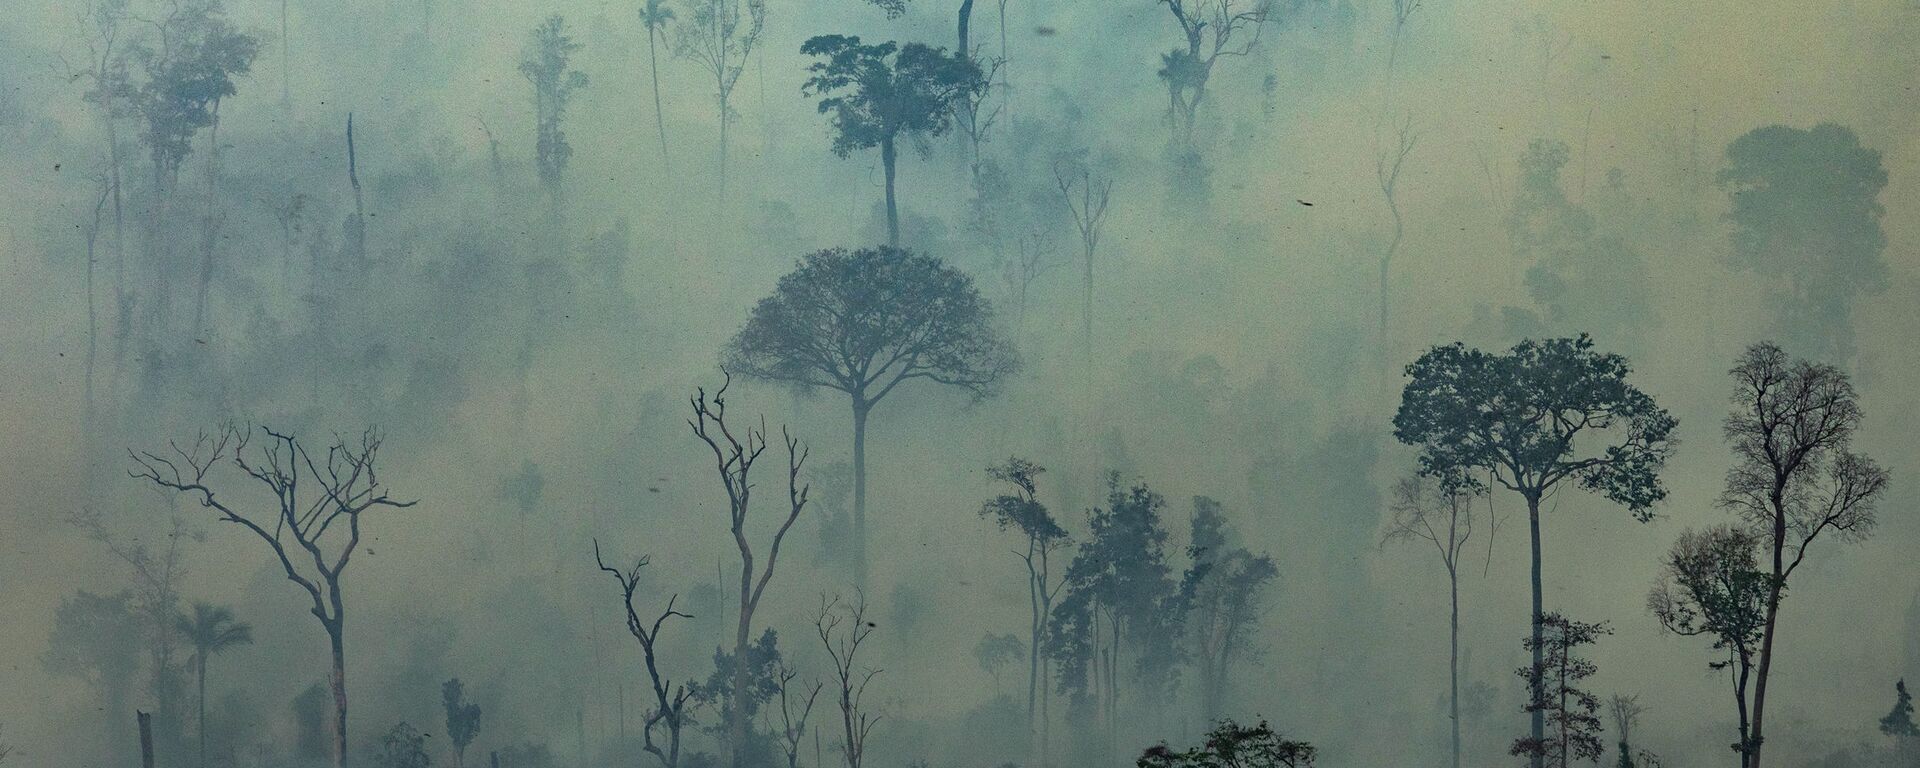 Amazon ormanlarındaki yangınlar - Sputnik Türkiye, 1920, 19.11.2021